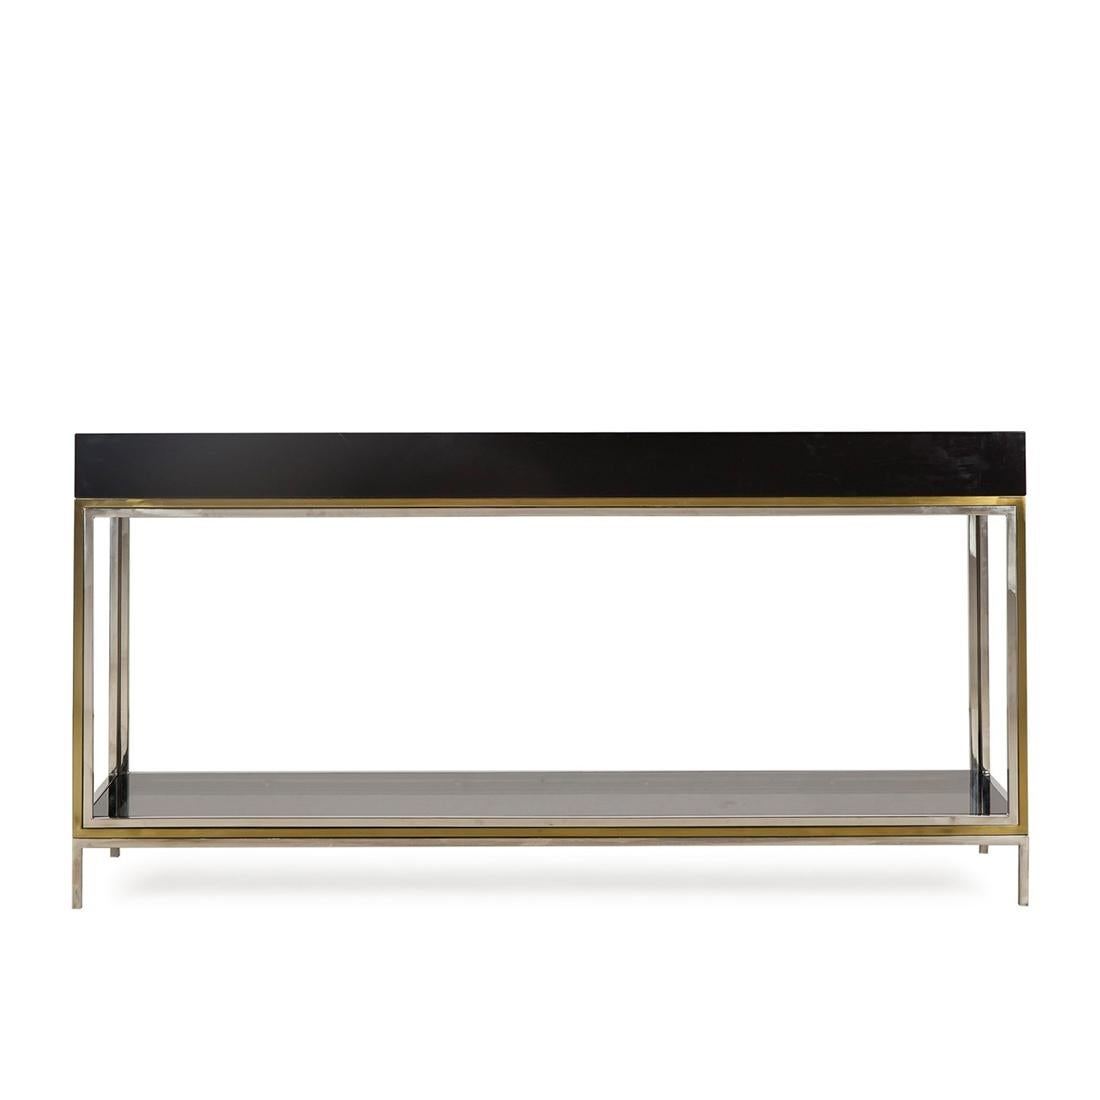 Table console laquée noire avec structure
en MDF finition laquée noire, avec verre fumé
dessus et avec cadre en acier inoxydable en finition laiton satiné.